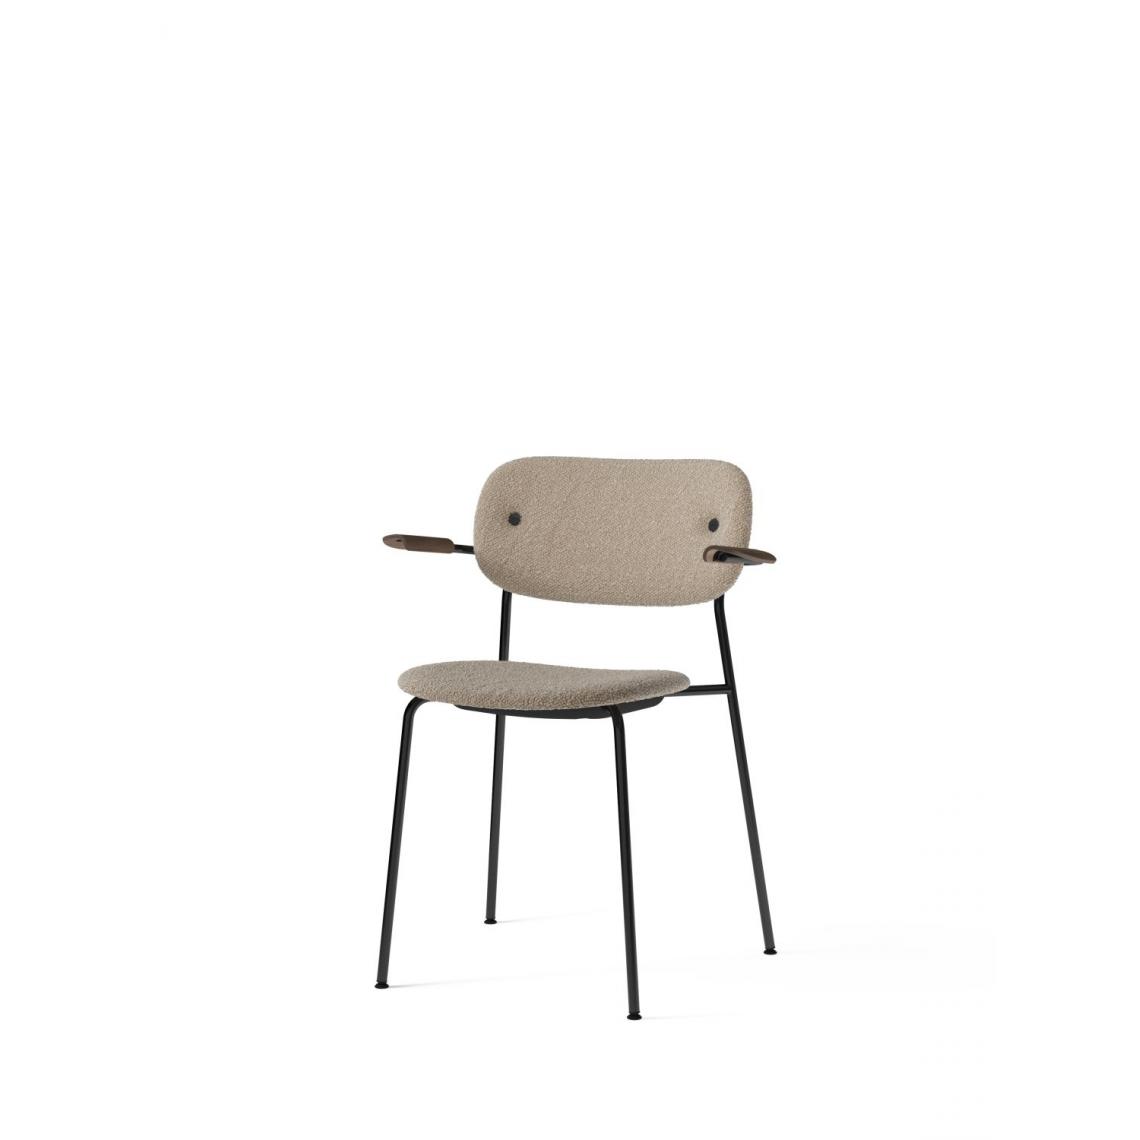 Menu - Co Dining Chair avec accoudoir - noir - MenuCoChairLupoSand - chêne, teinté foncé - Chaises